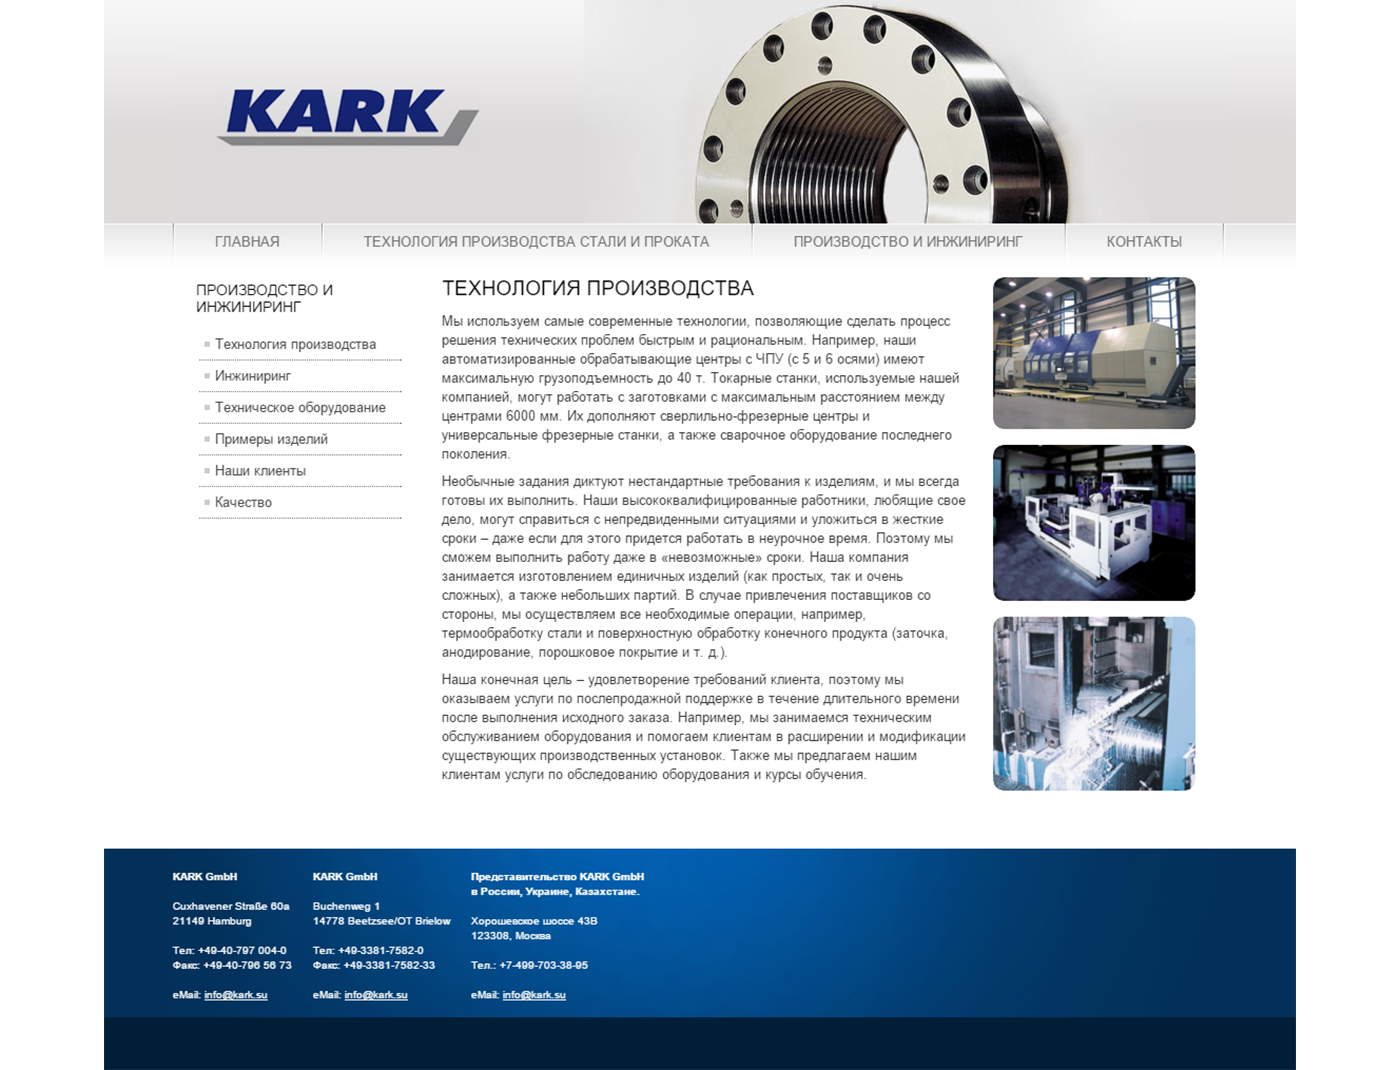 KARK GmbH